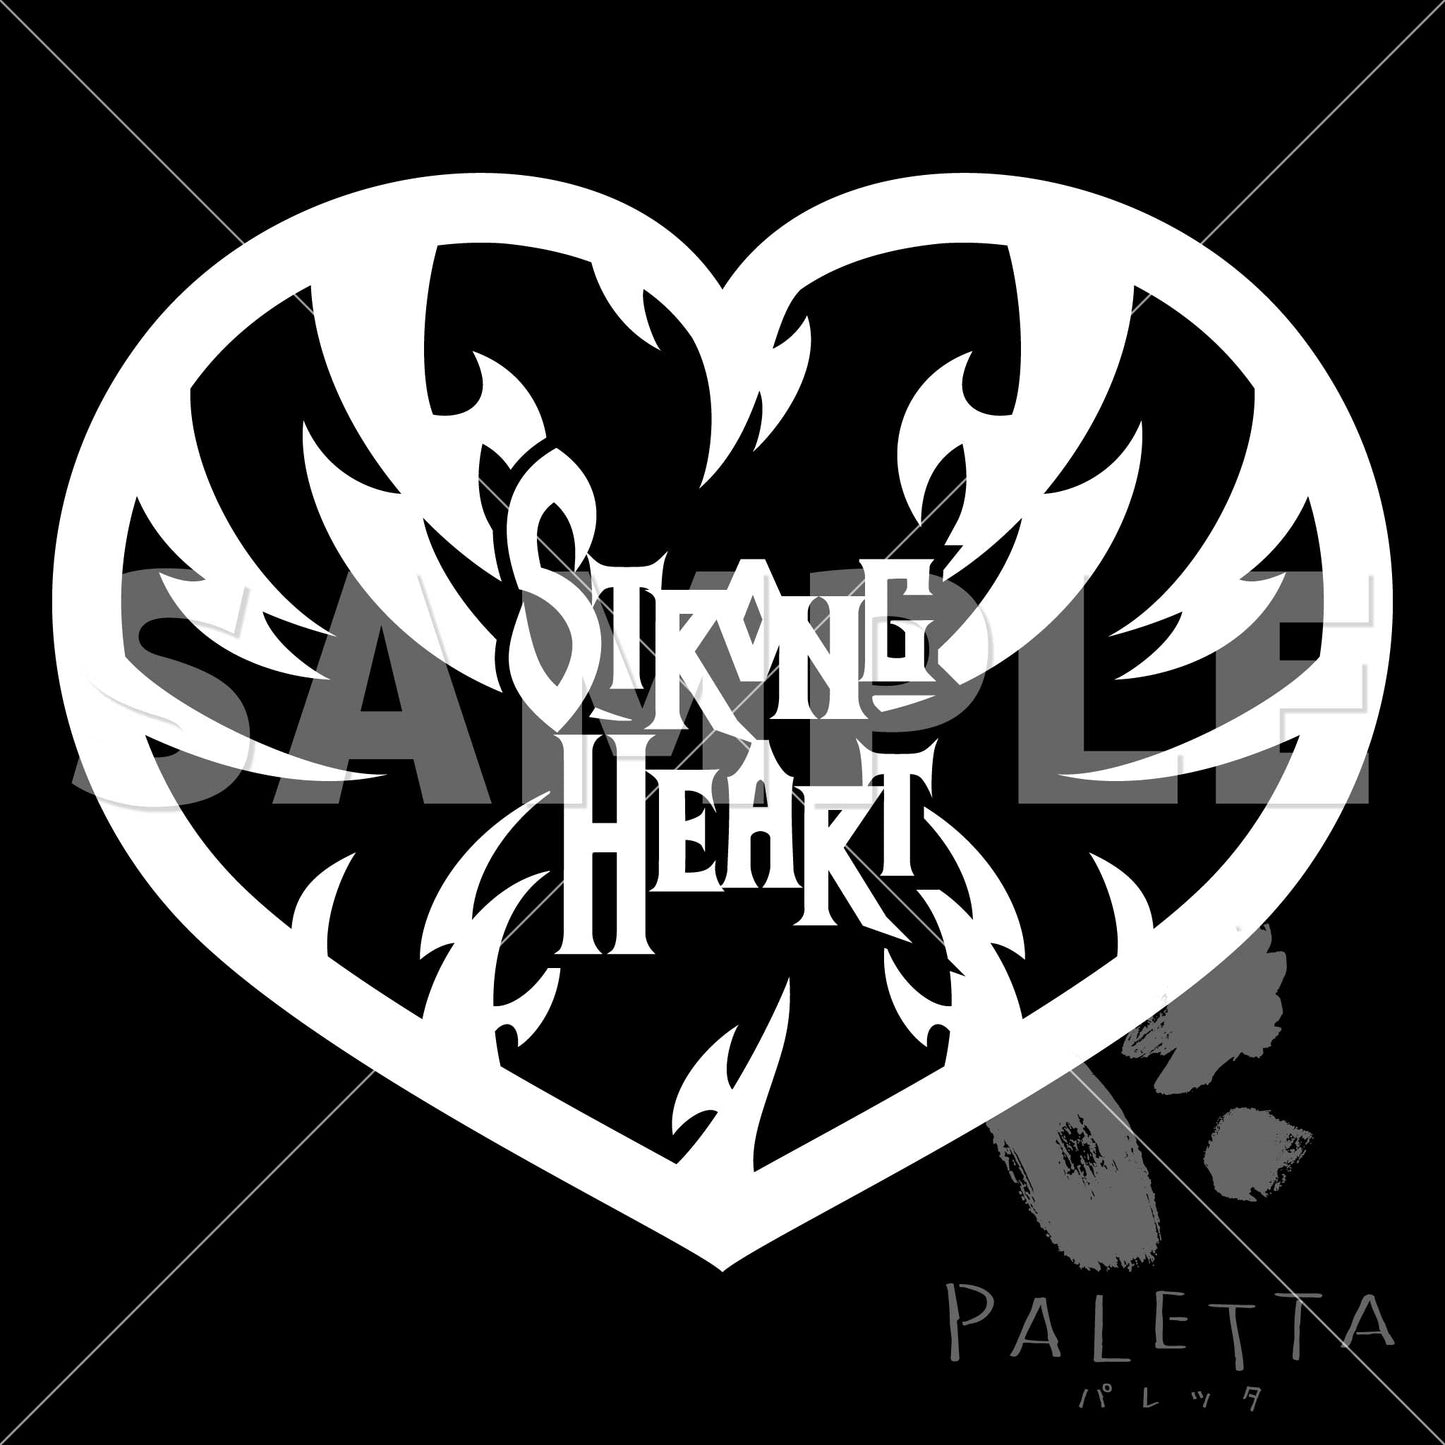 [Paletta] i04-03 strong heart